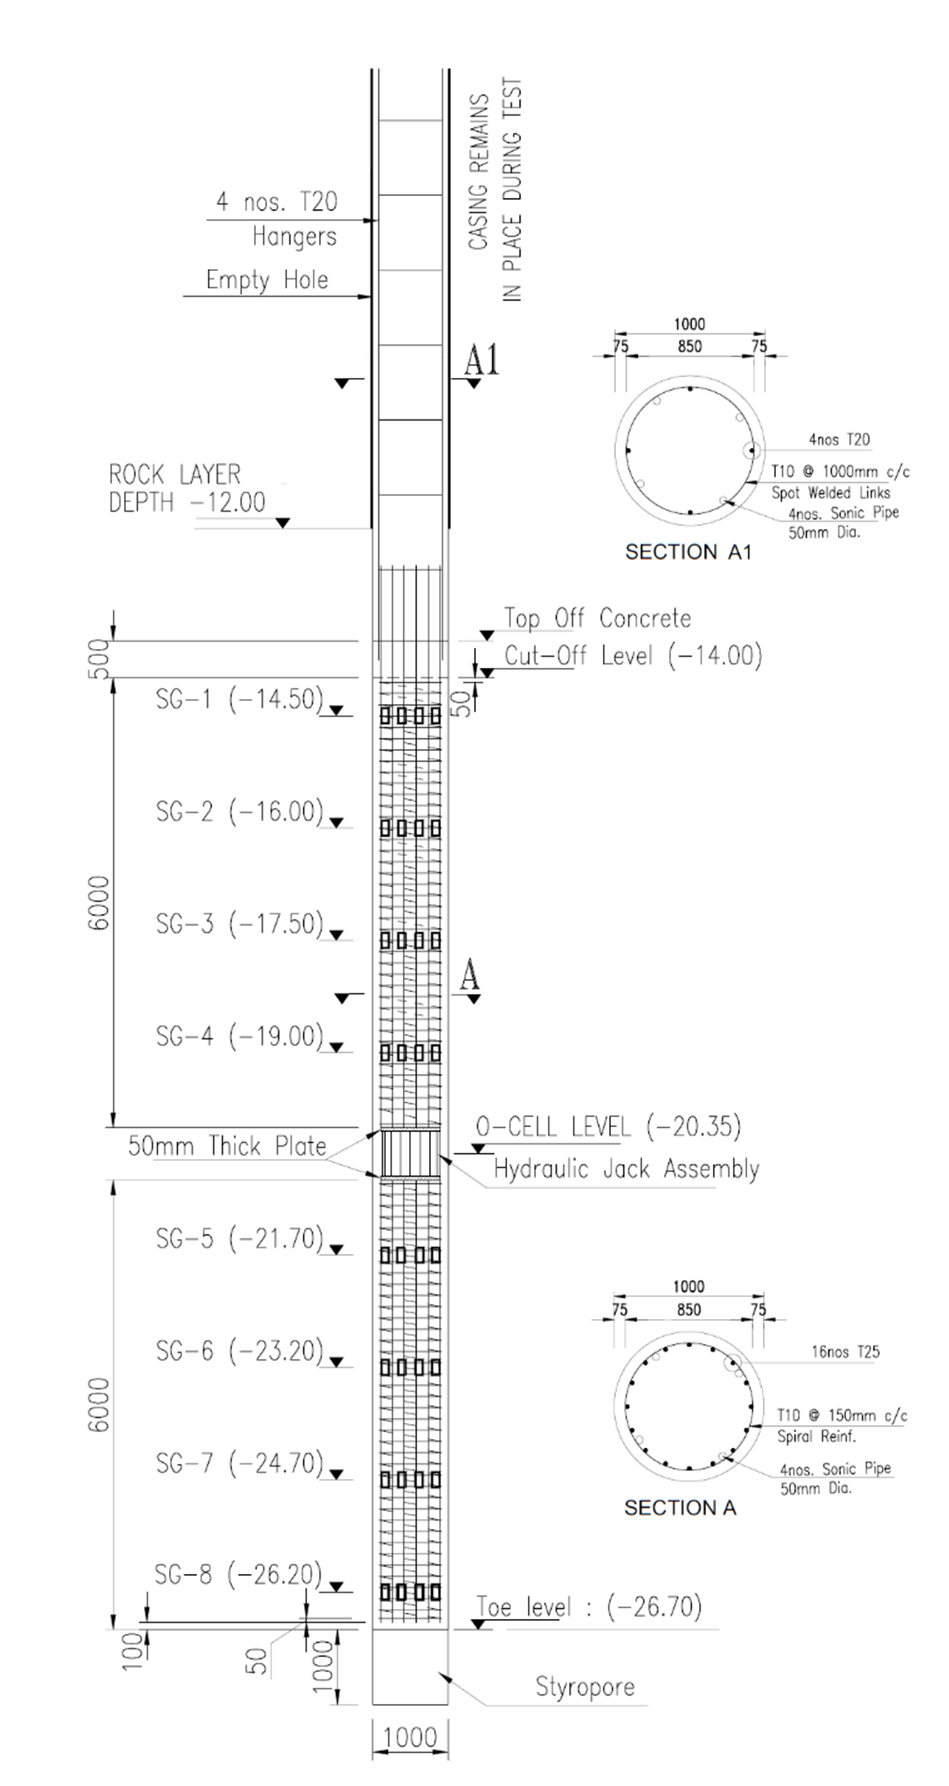 Fig.3: Test pile details